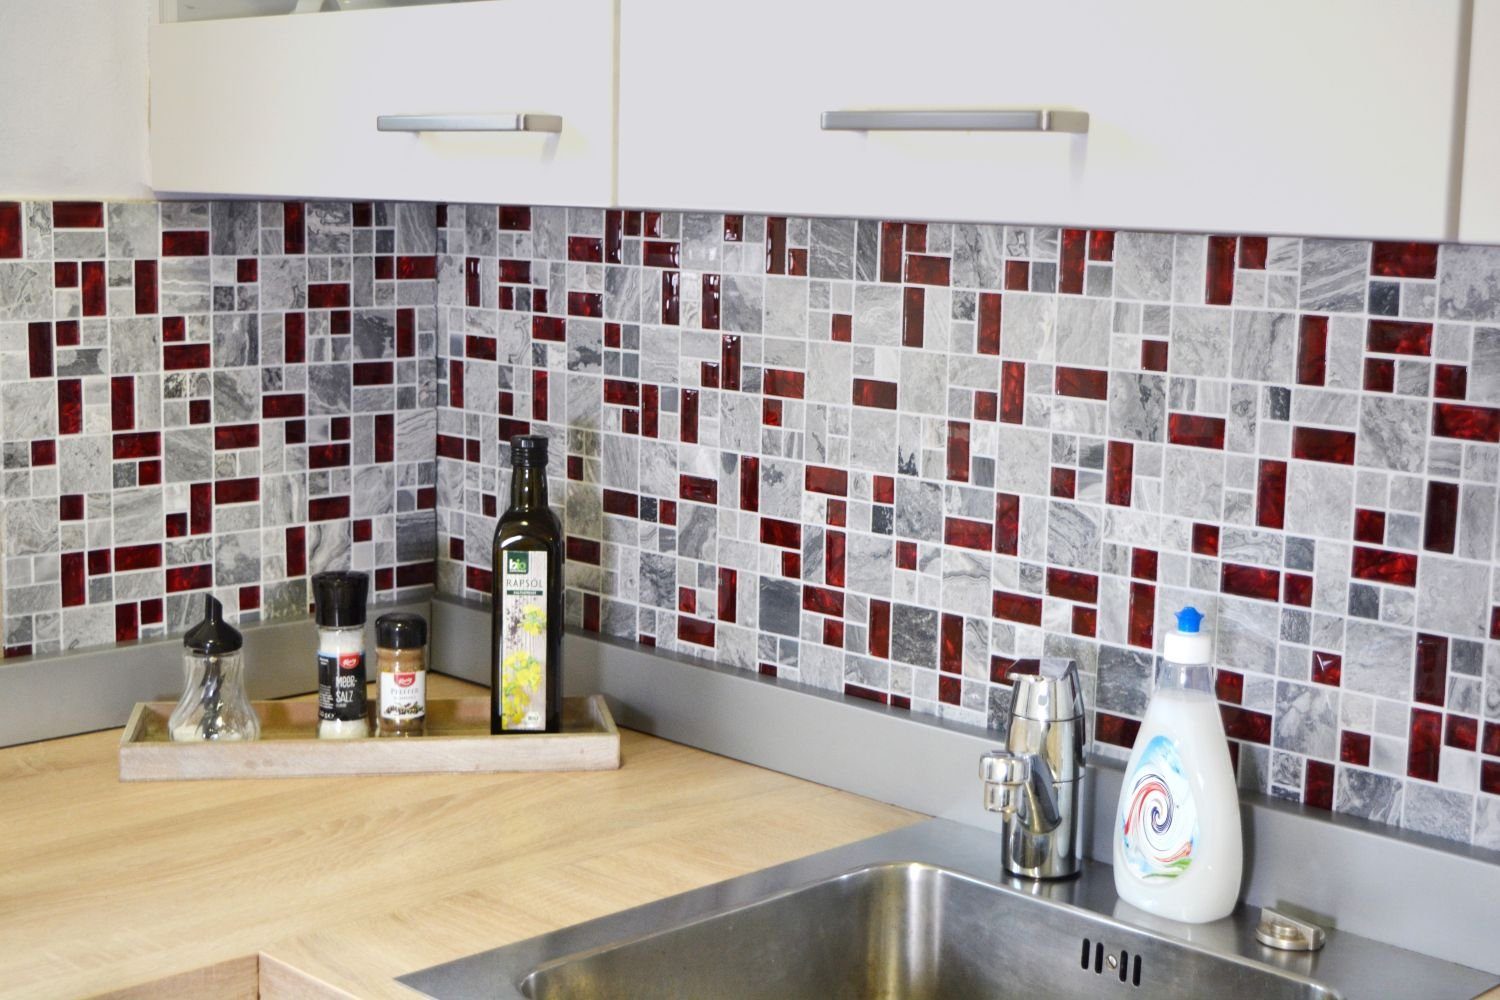 Mosani Mosaikfliesen Glasmosaik Naturstein Mosaik grau mit rot glänzend / 10 Matten, Set, 10-teilig, Küchenwand, Fliesenspiegel